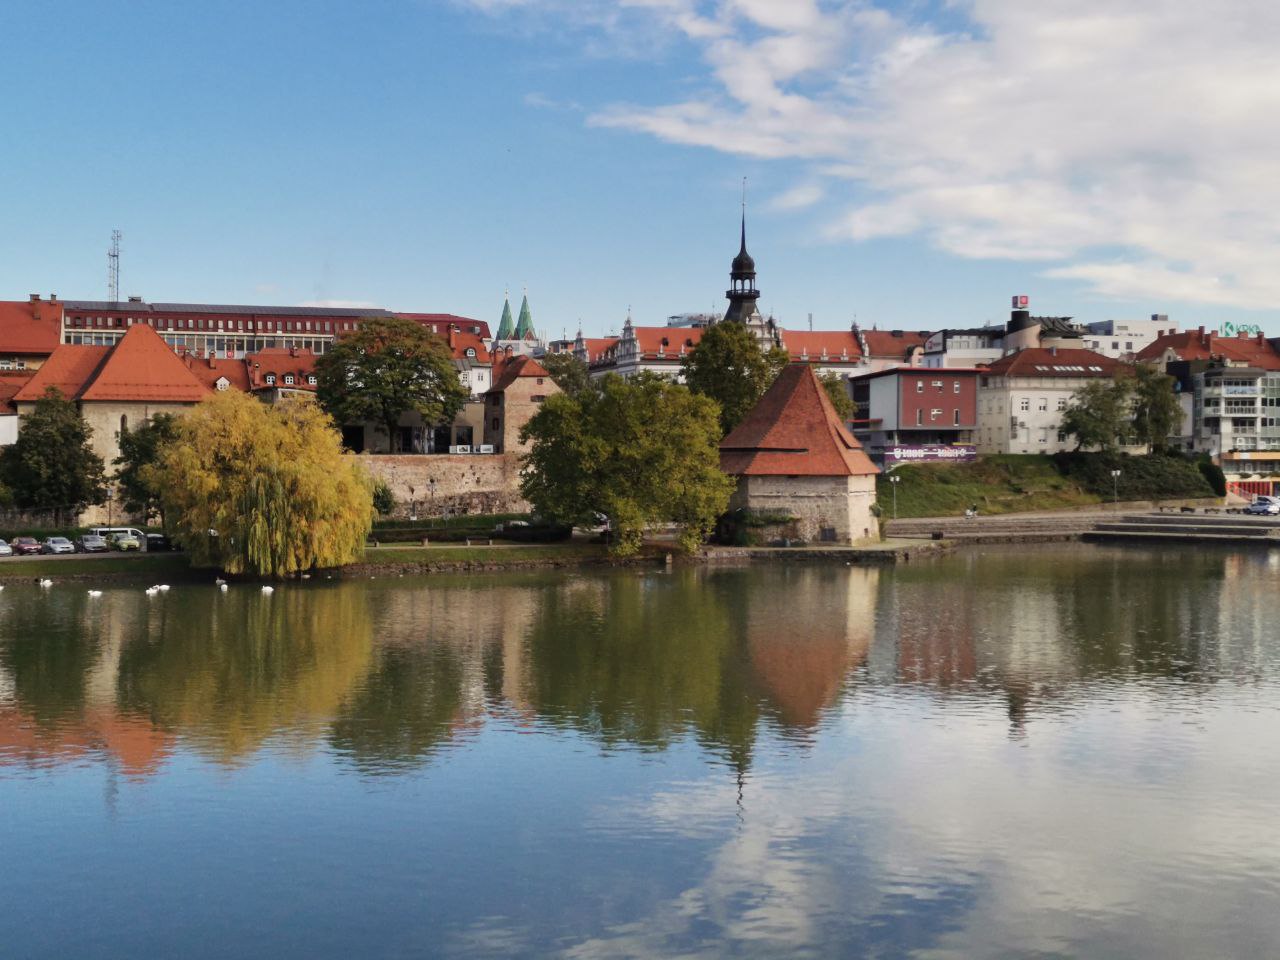 DNEVNA: Vsak Mariborčan je dolžan 668 evrov, krepko več kot povprečen Slovenec